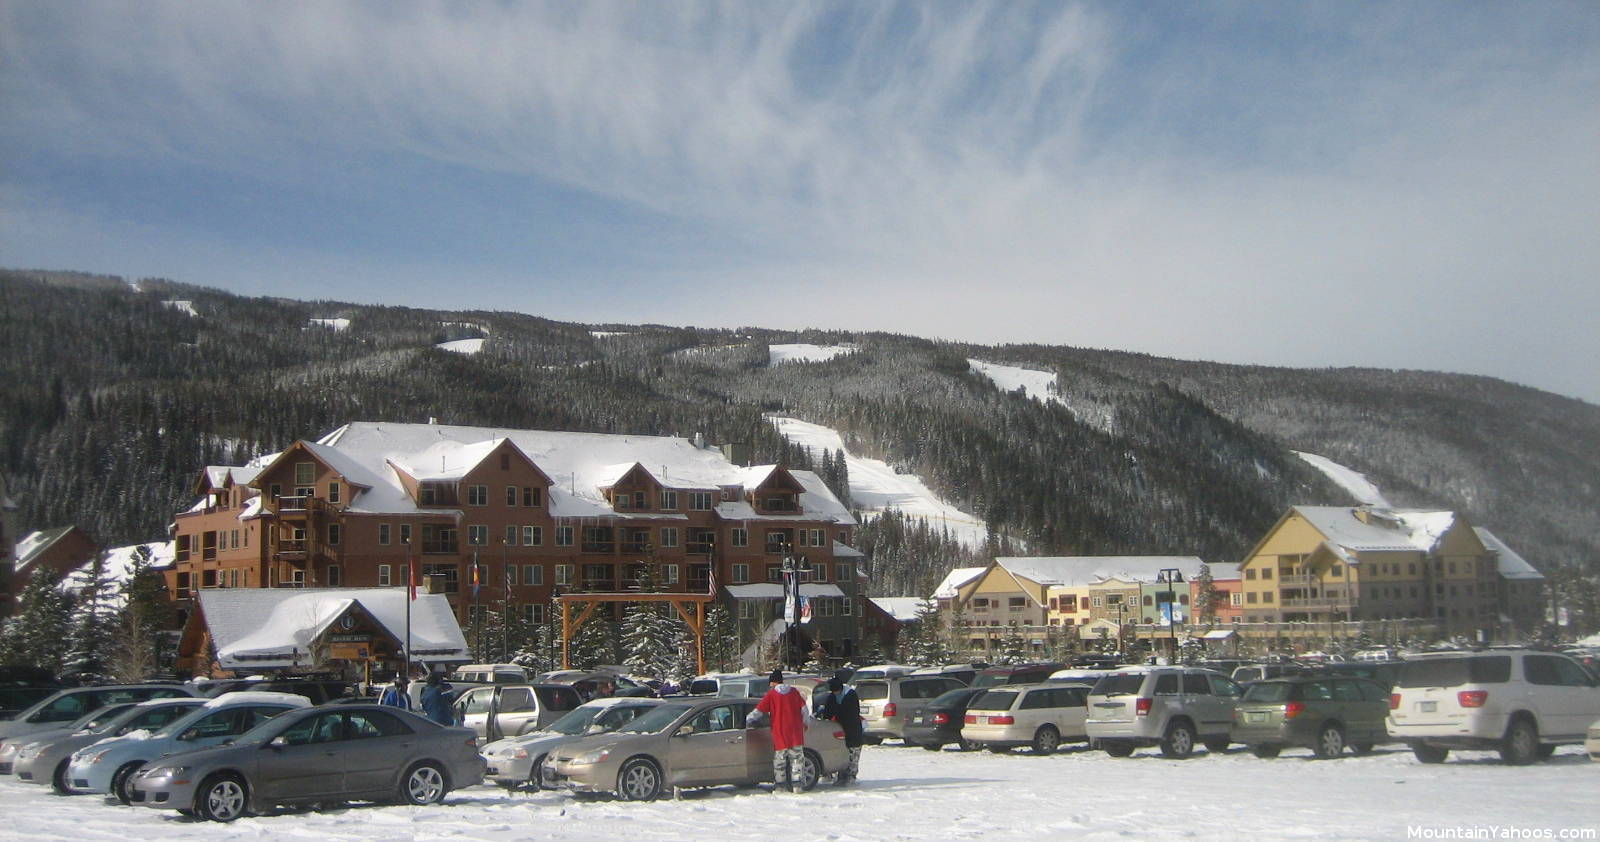 Where to Ski: Keystone Resort